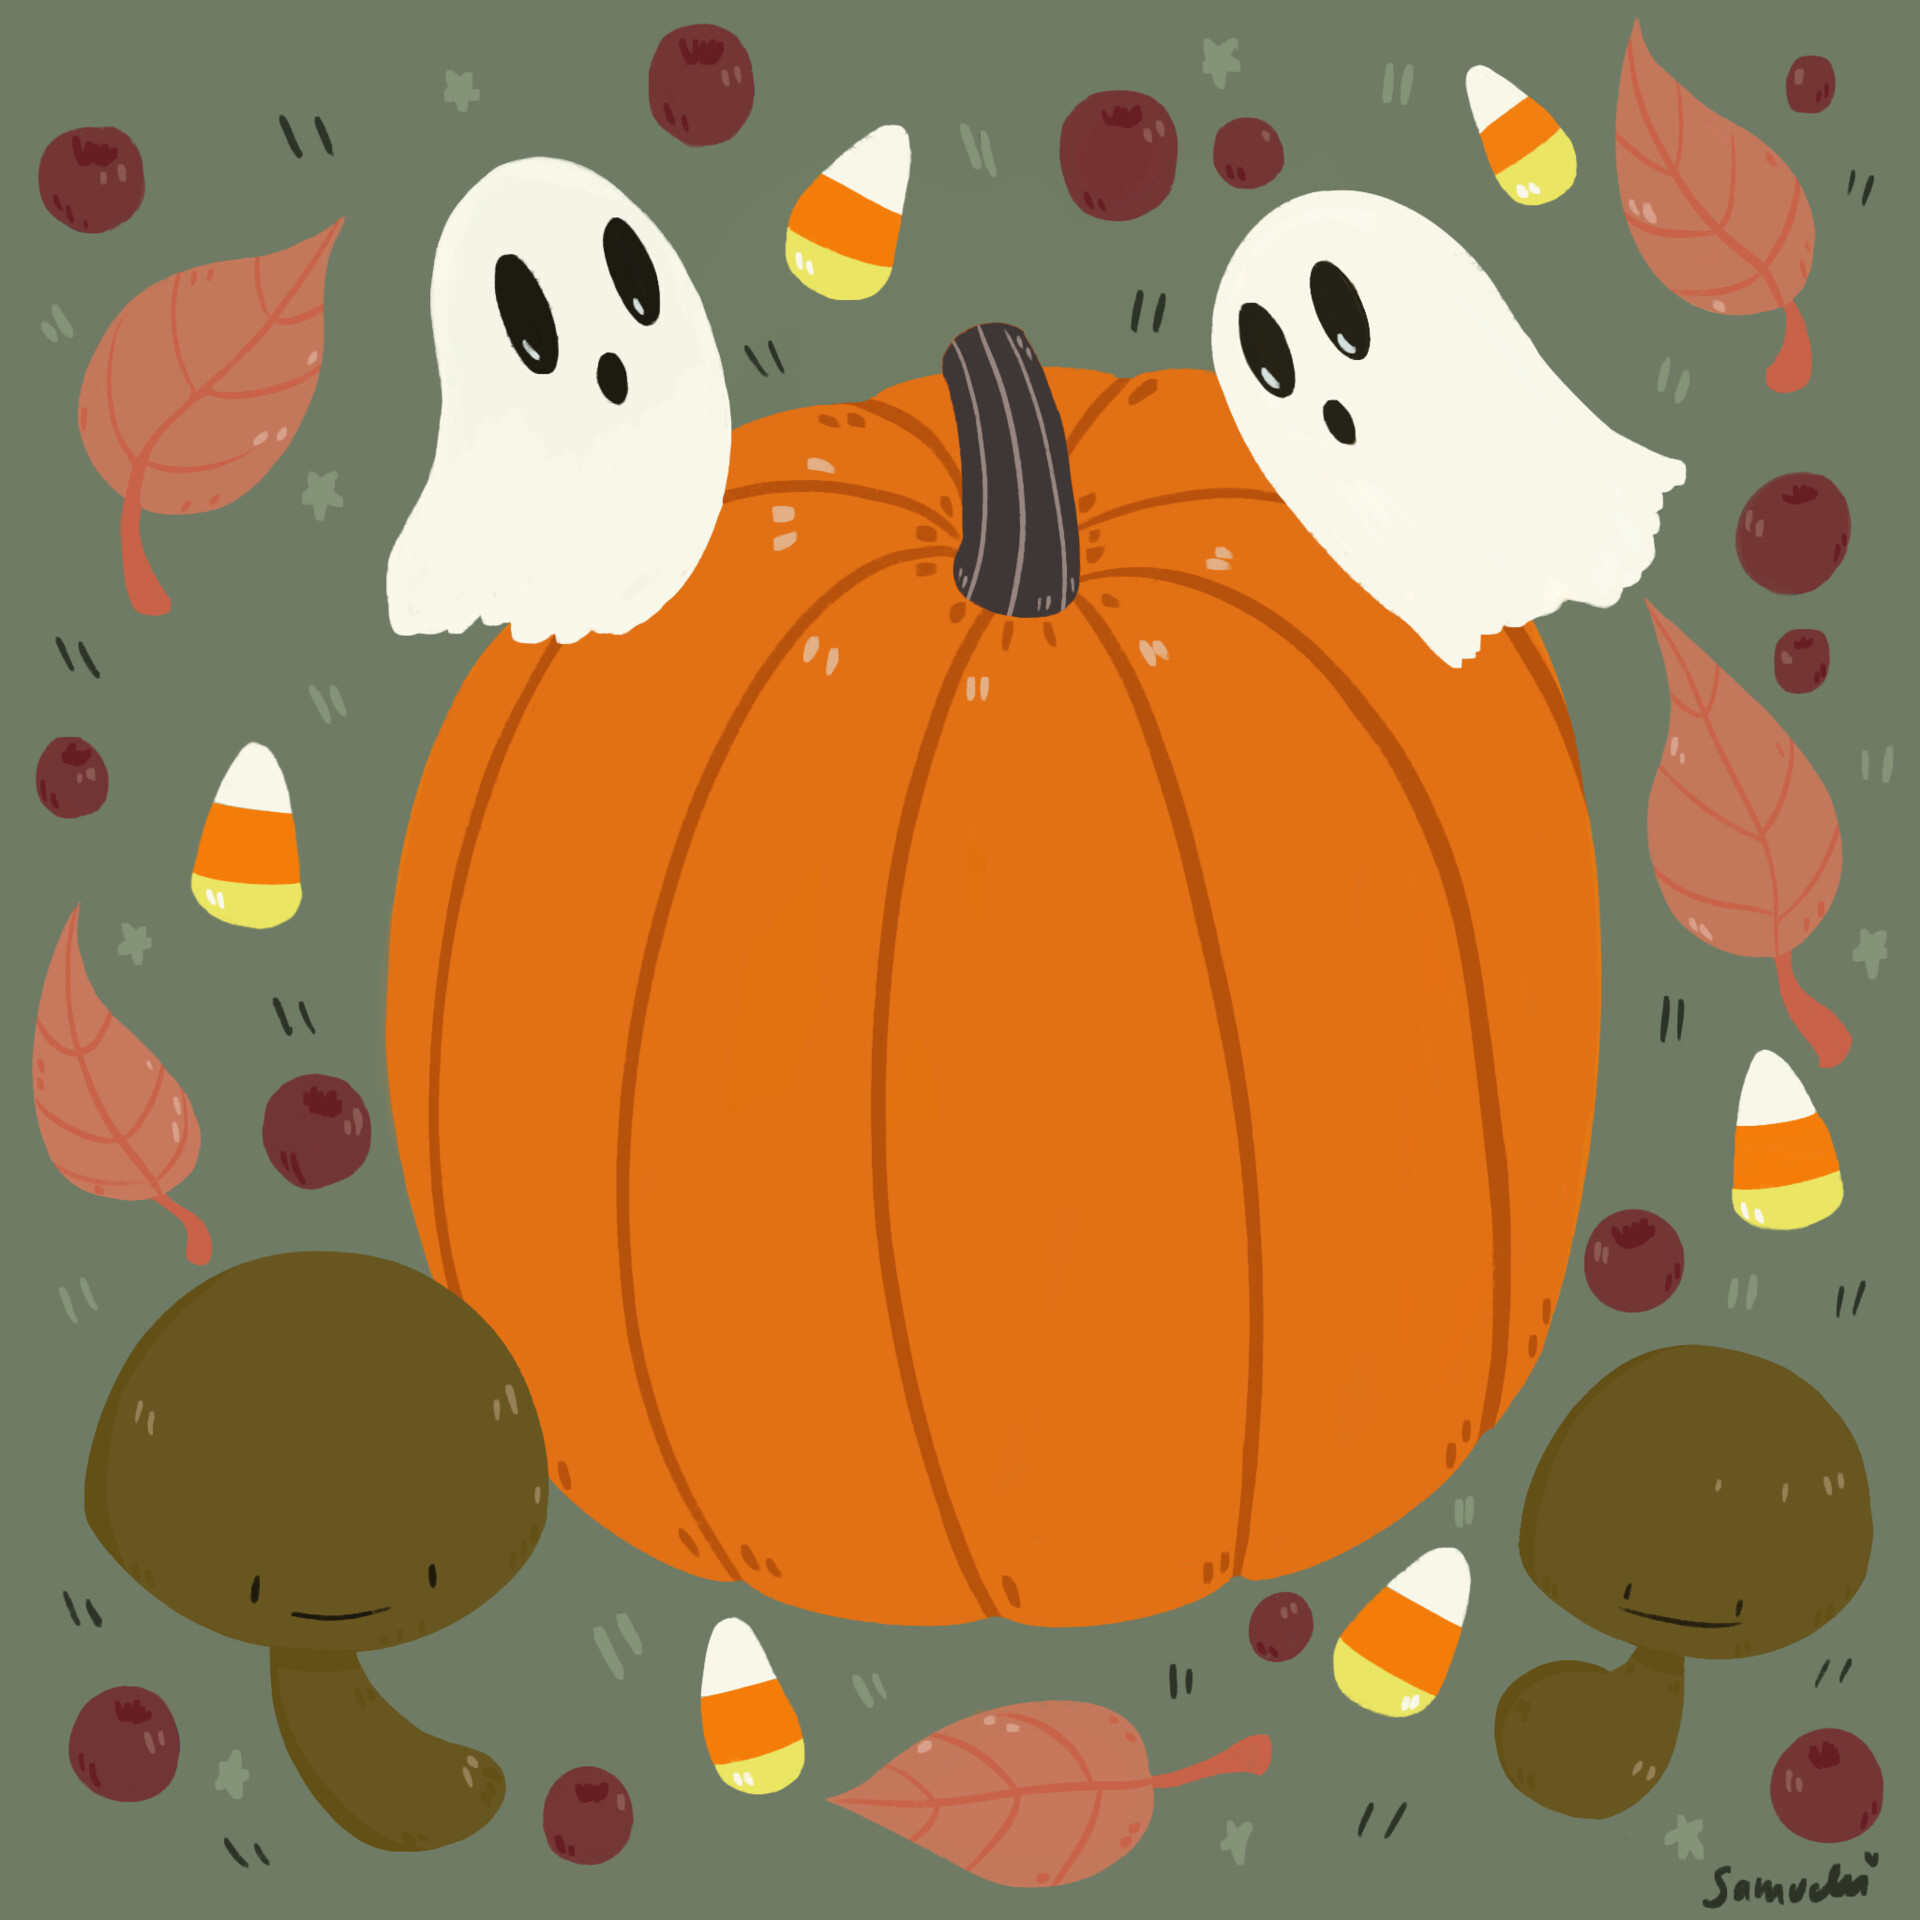 ArtStation - Spooky Fall Drawing